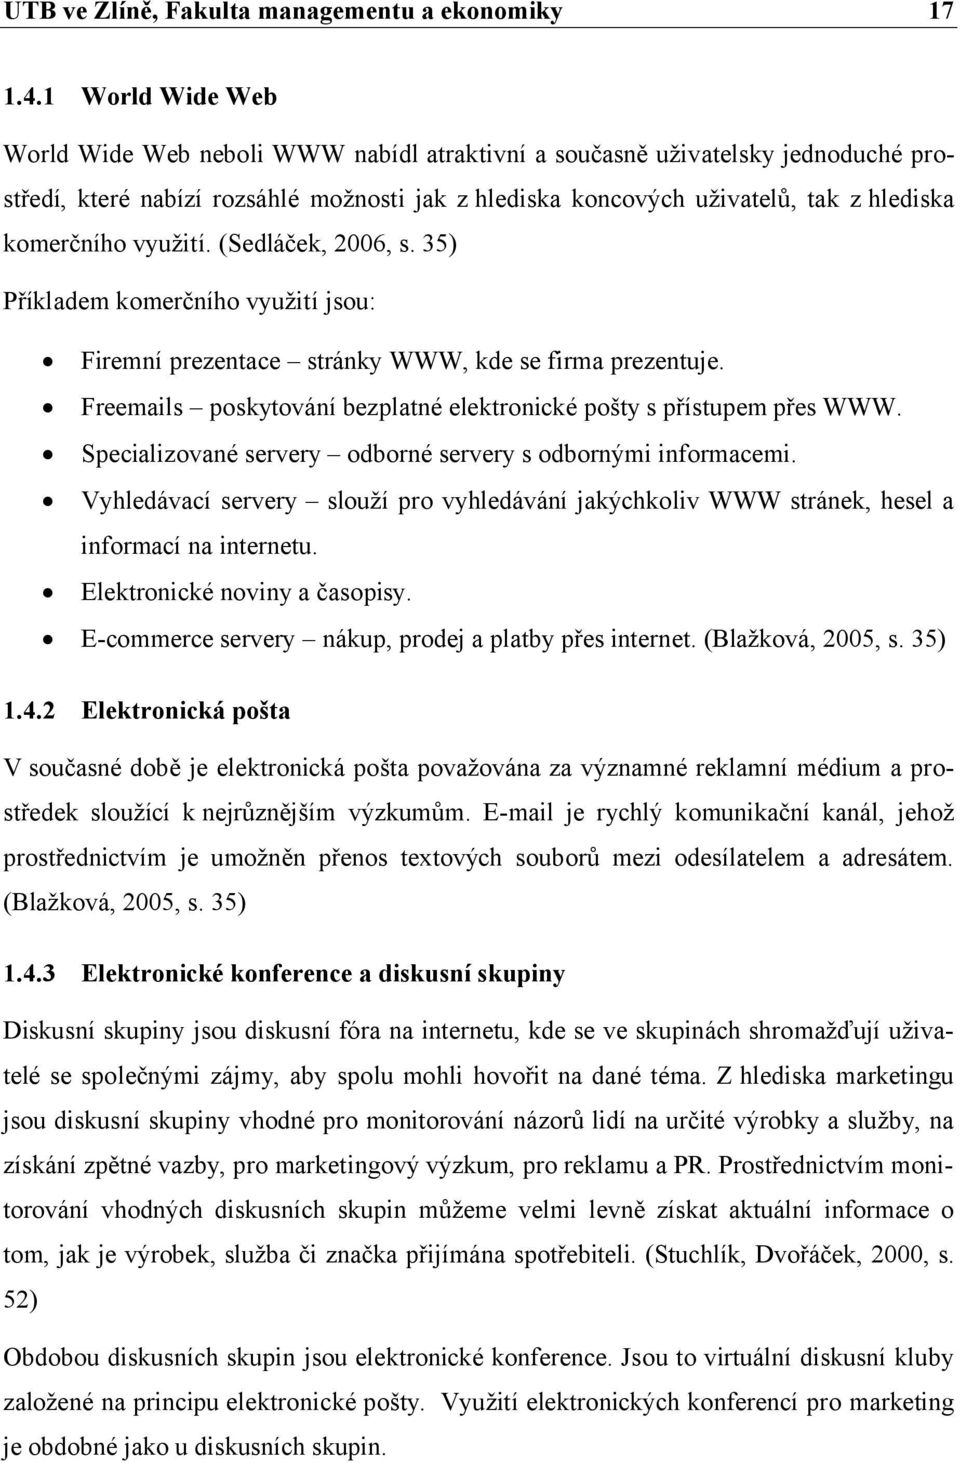 využití. (Sedláček, 2006, s. 35) Příkladem komerčního využití jsou: Firemní prezentace stránky WWW, kde se firma prezentuje. Freemails poskytování bezplatné elektronické pošty s přístupem přes WWW.